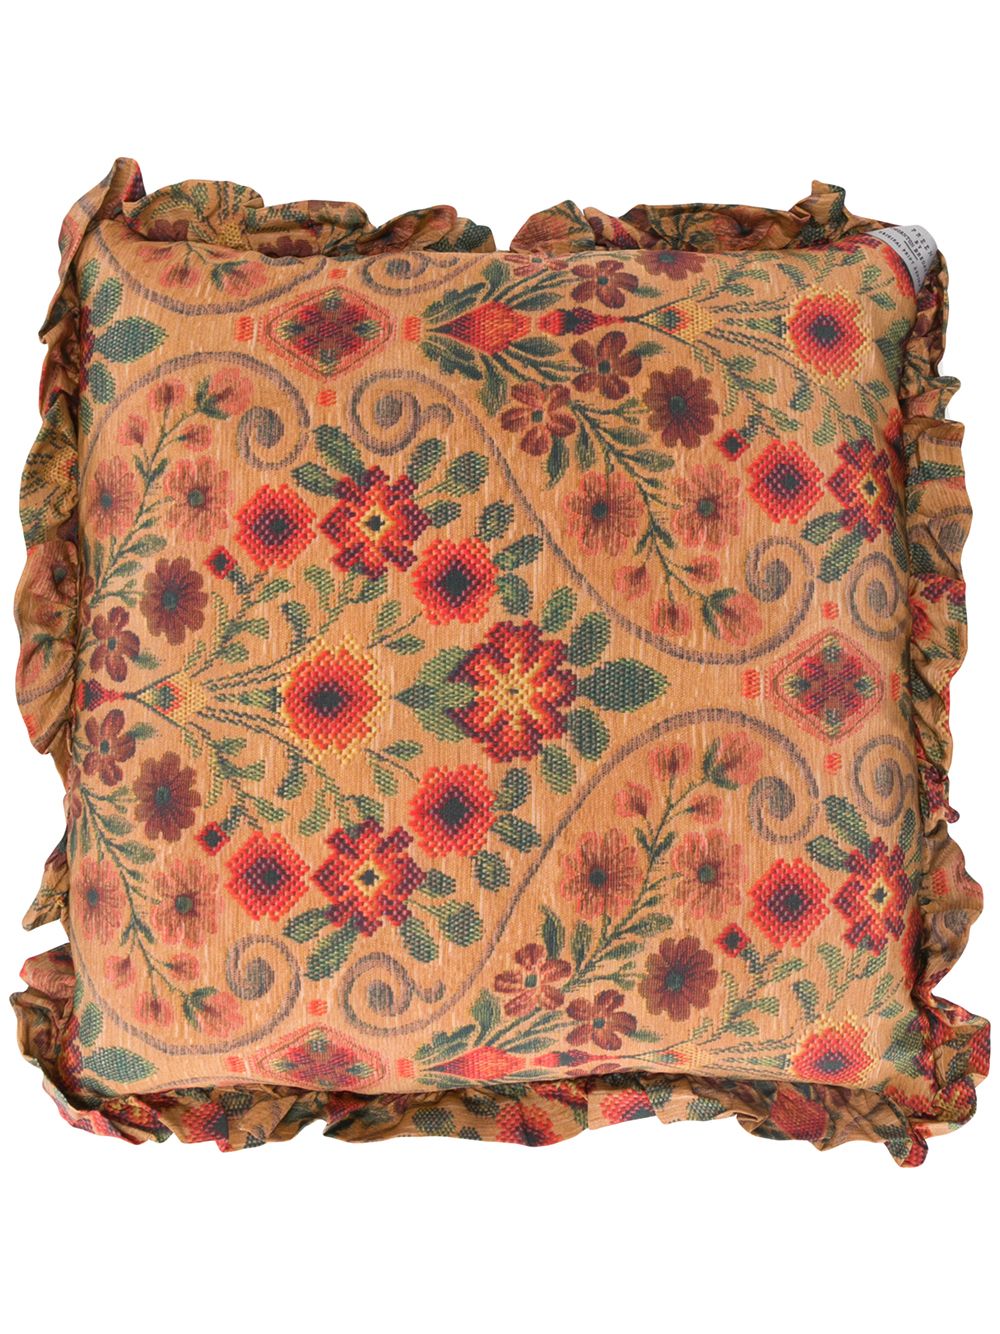 фото Preen by thornton bregazzi подушка с цветочным принтом